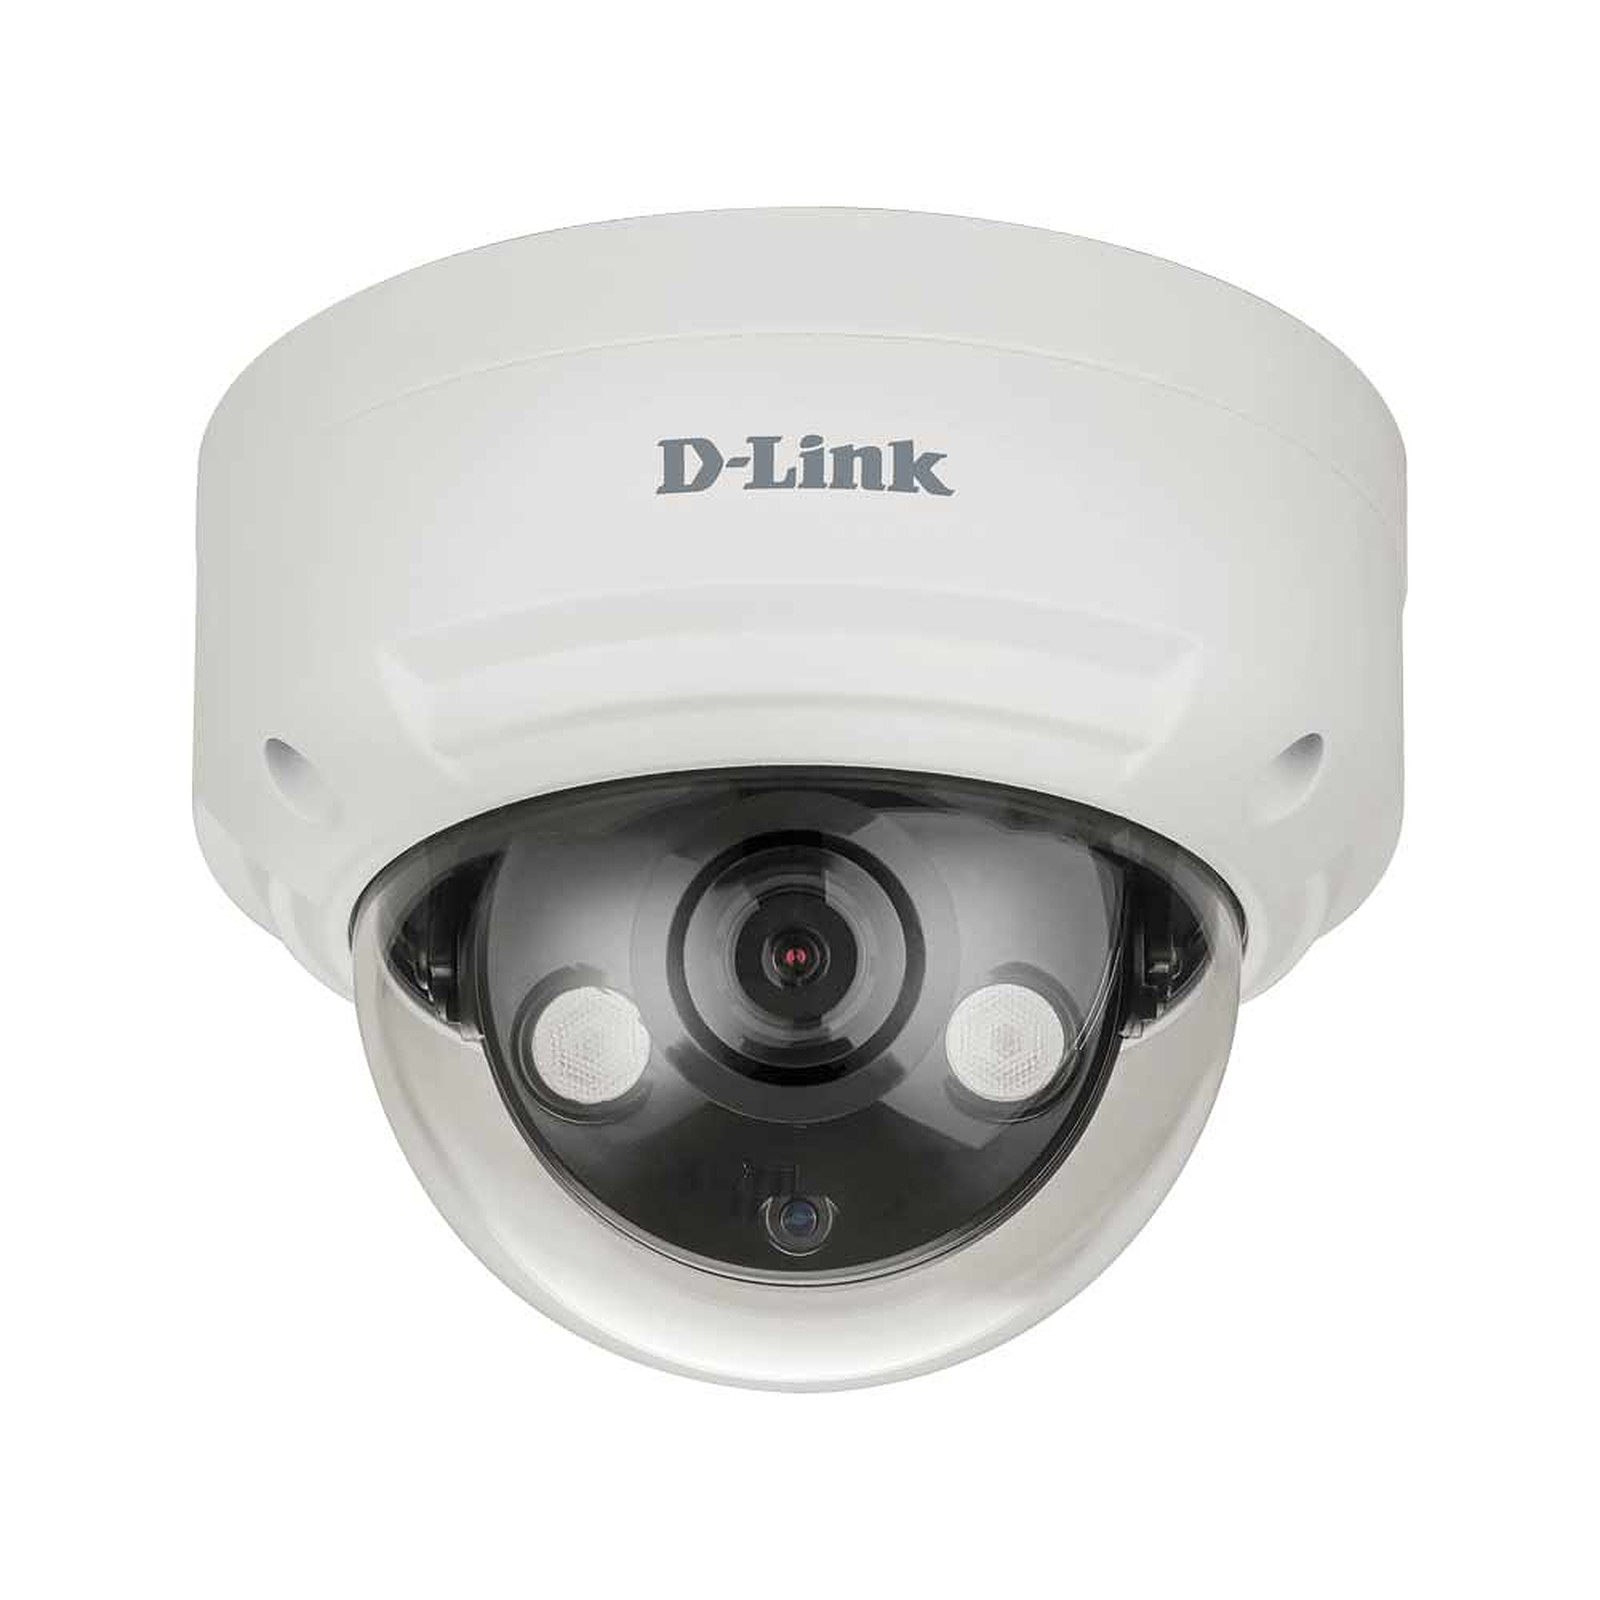 D-Link DCS-4618EK - Camera IP D-Link